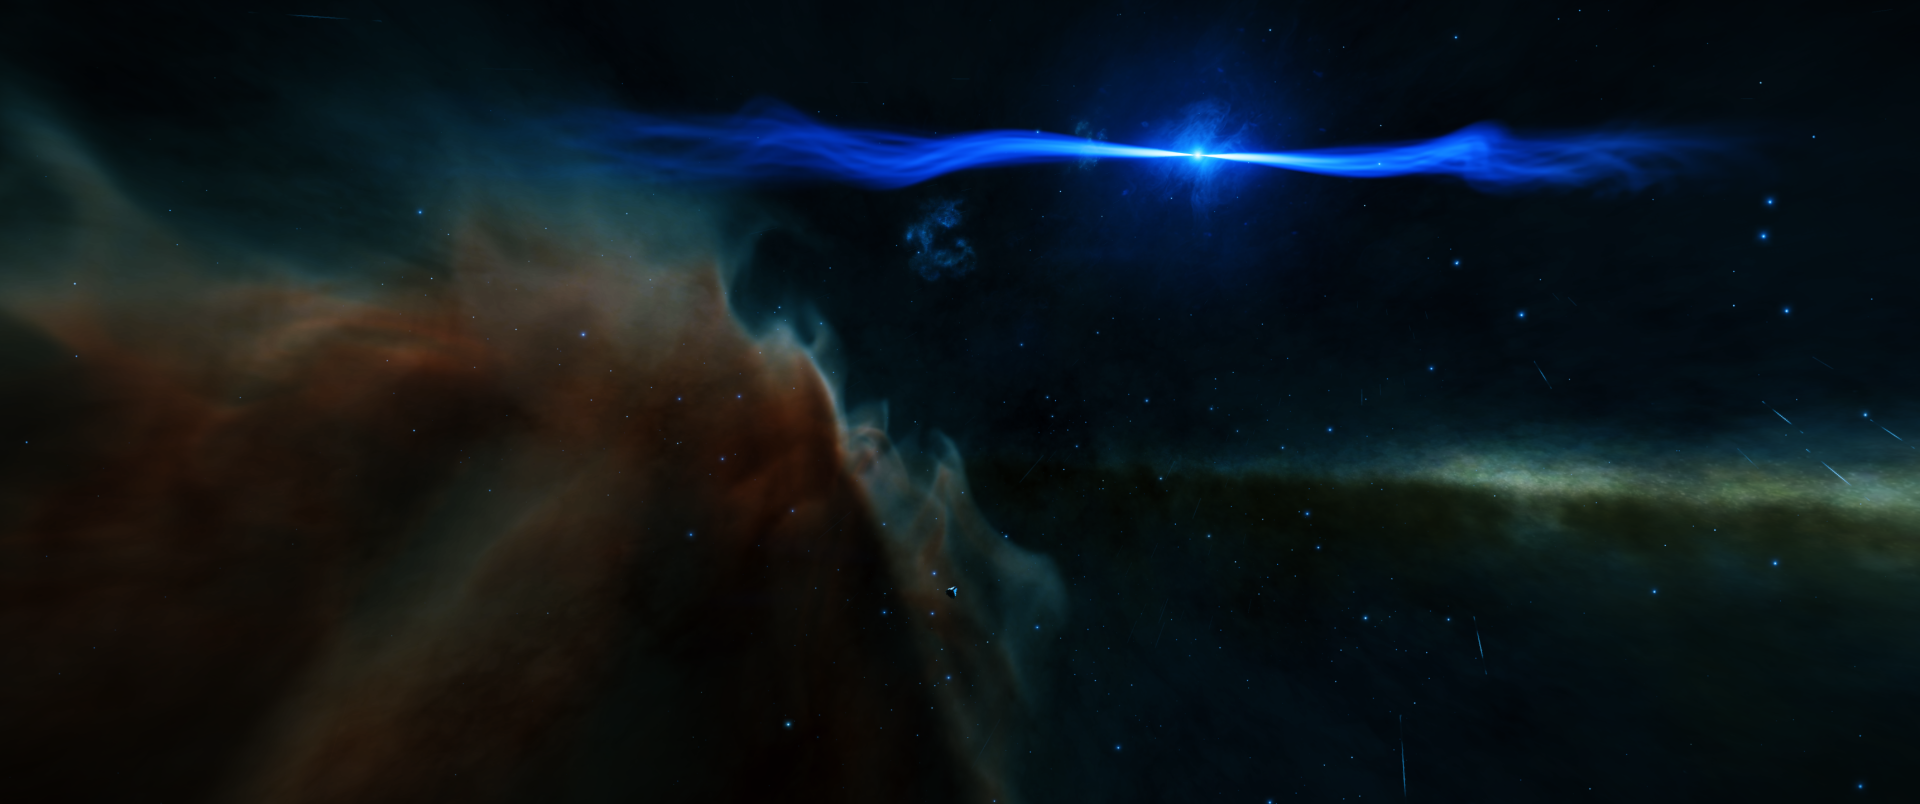 Neutron star near Eta Carina Nebula